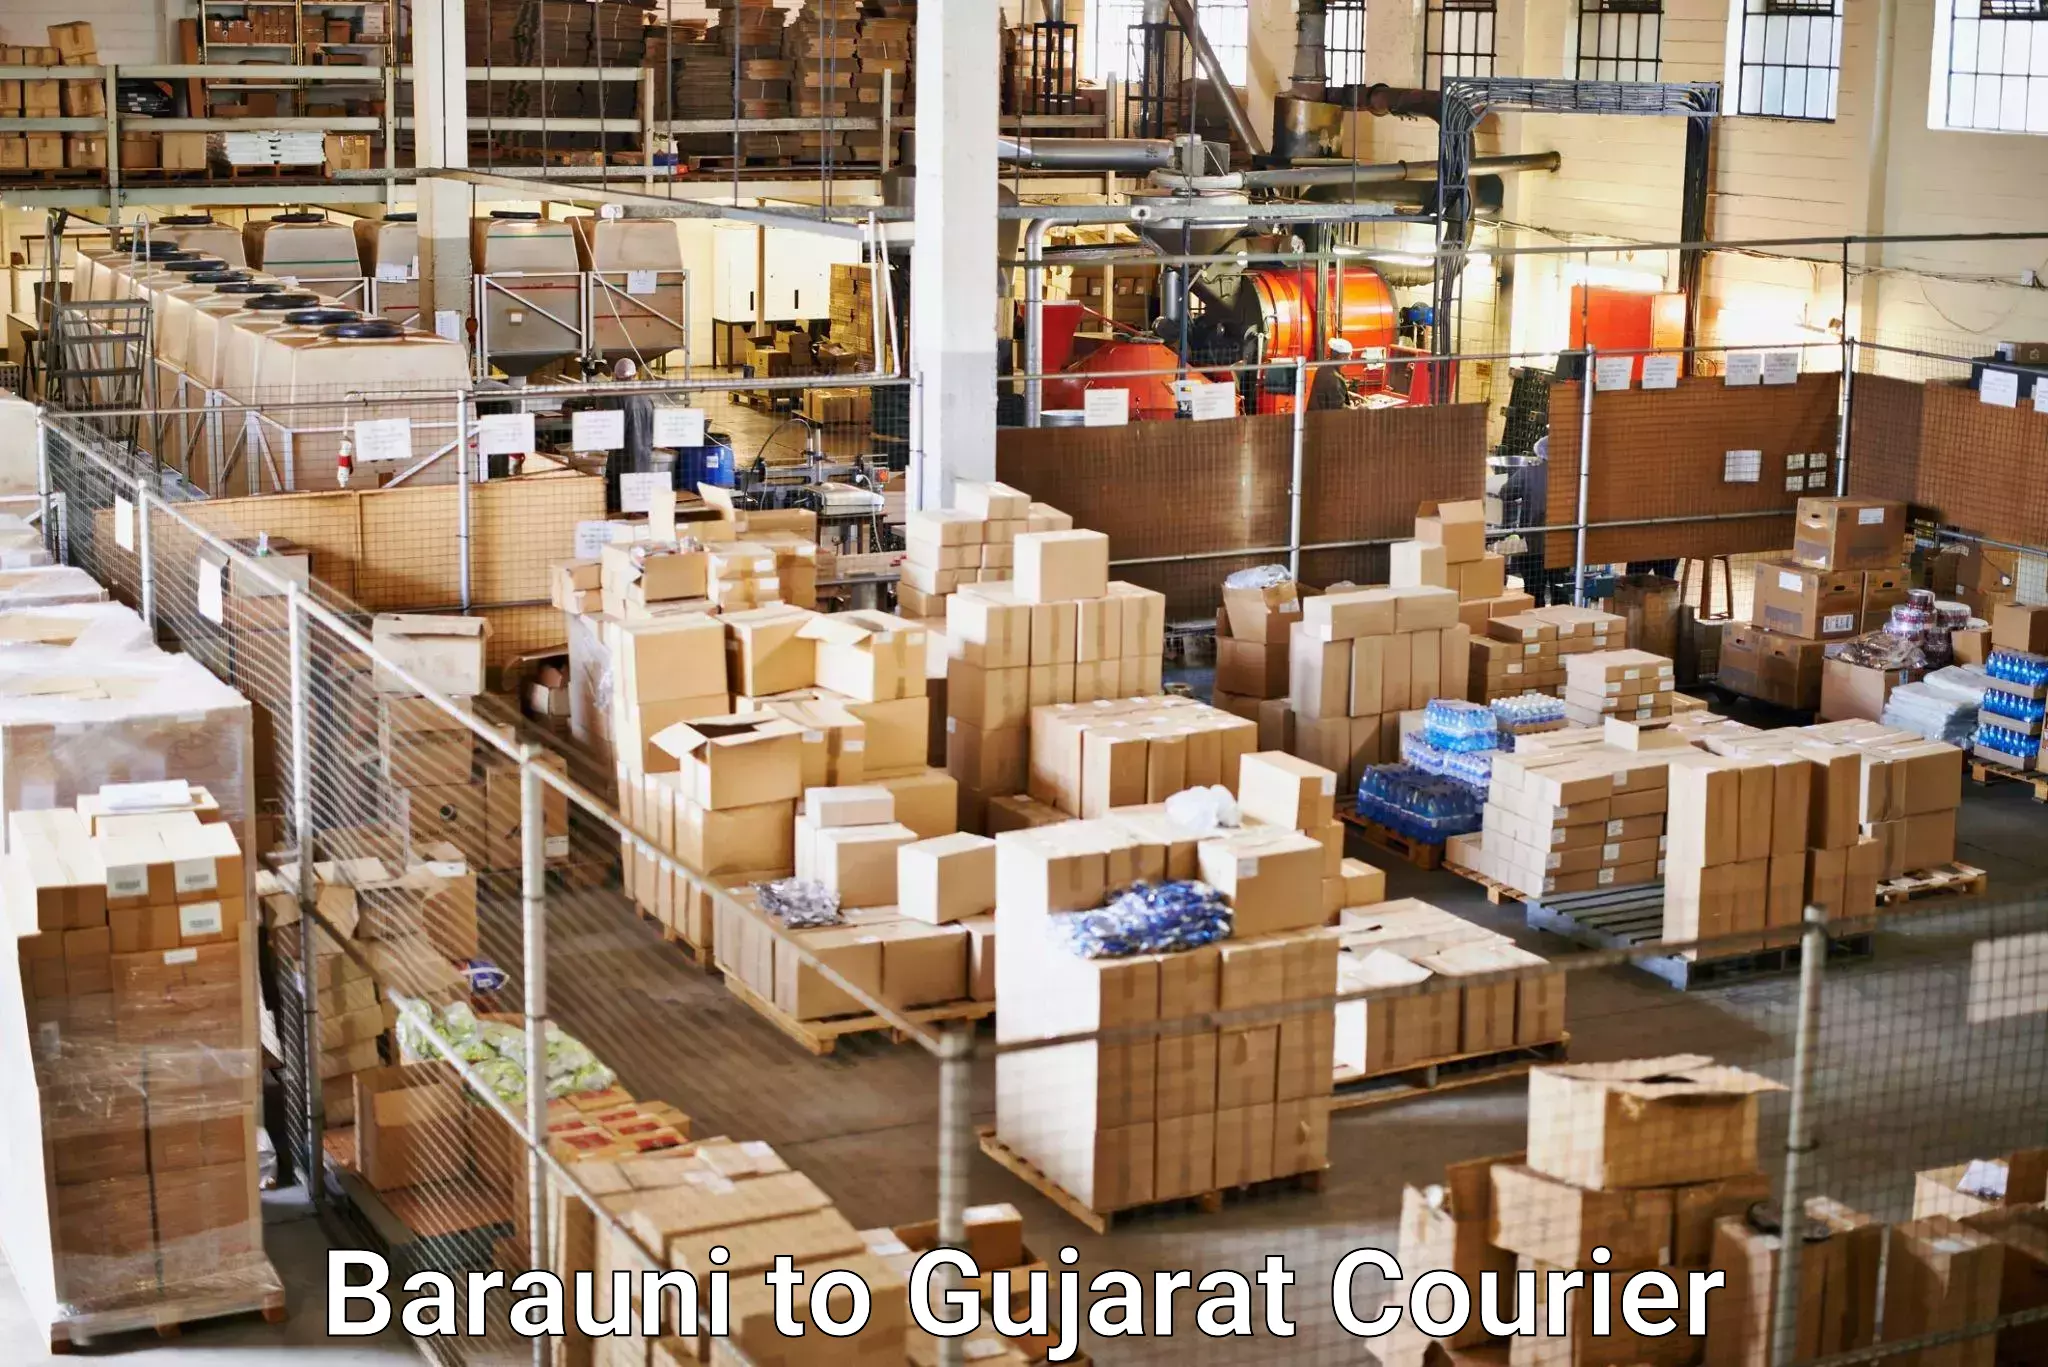 Door-to-door freight service Barauni to Bhabhar